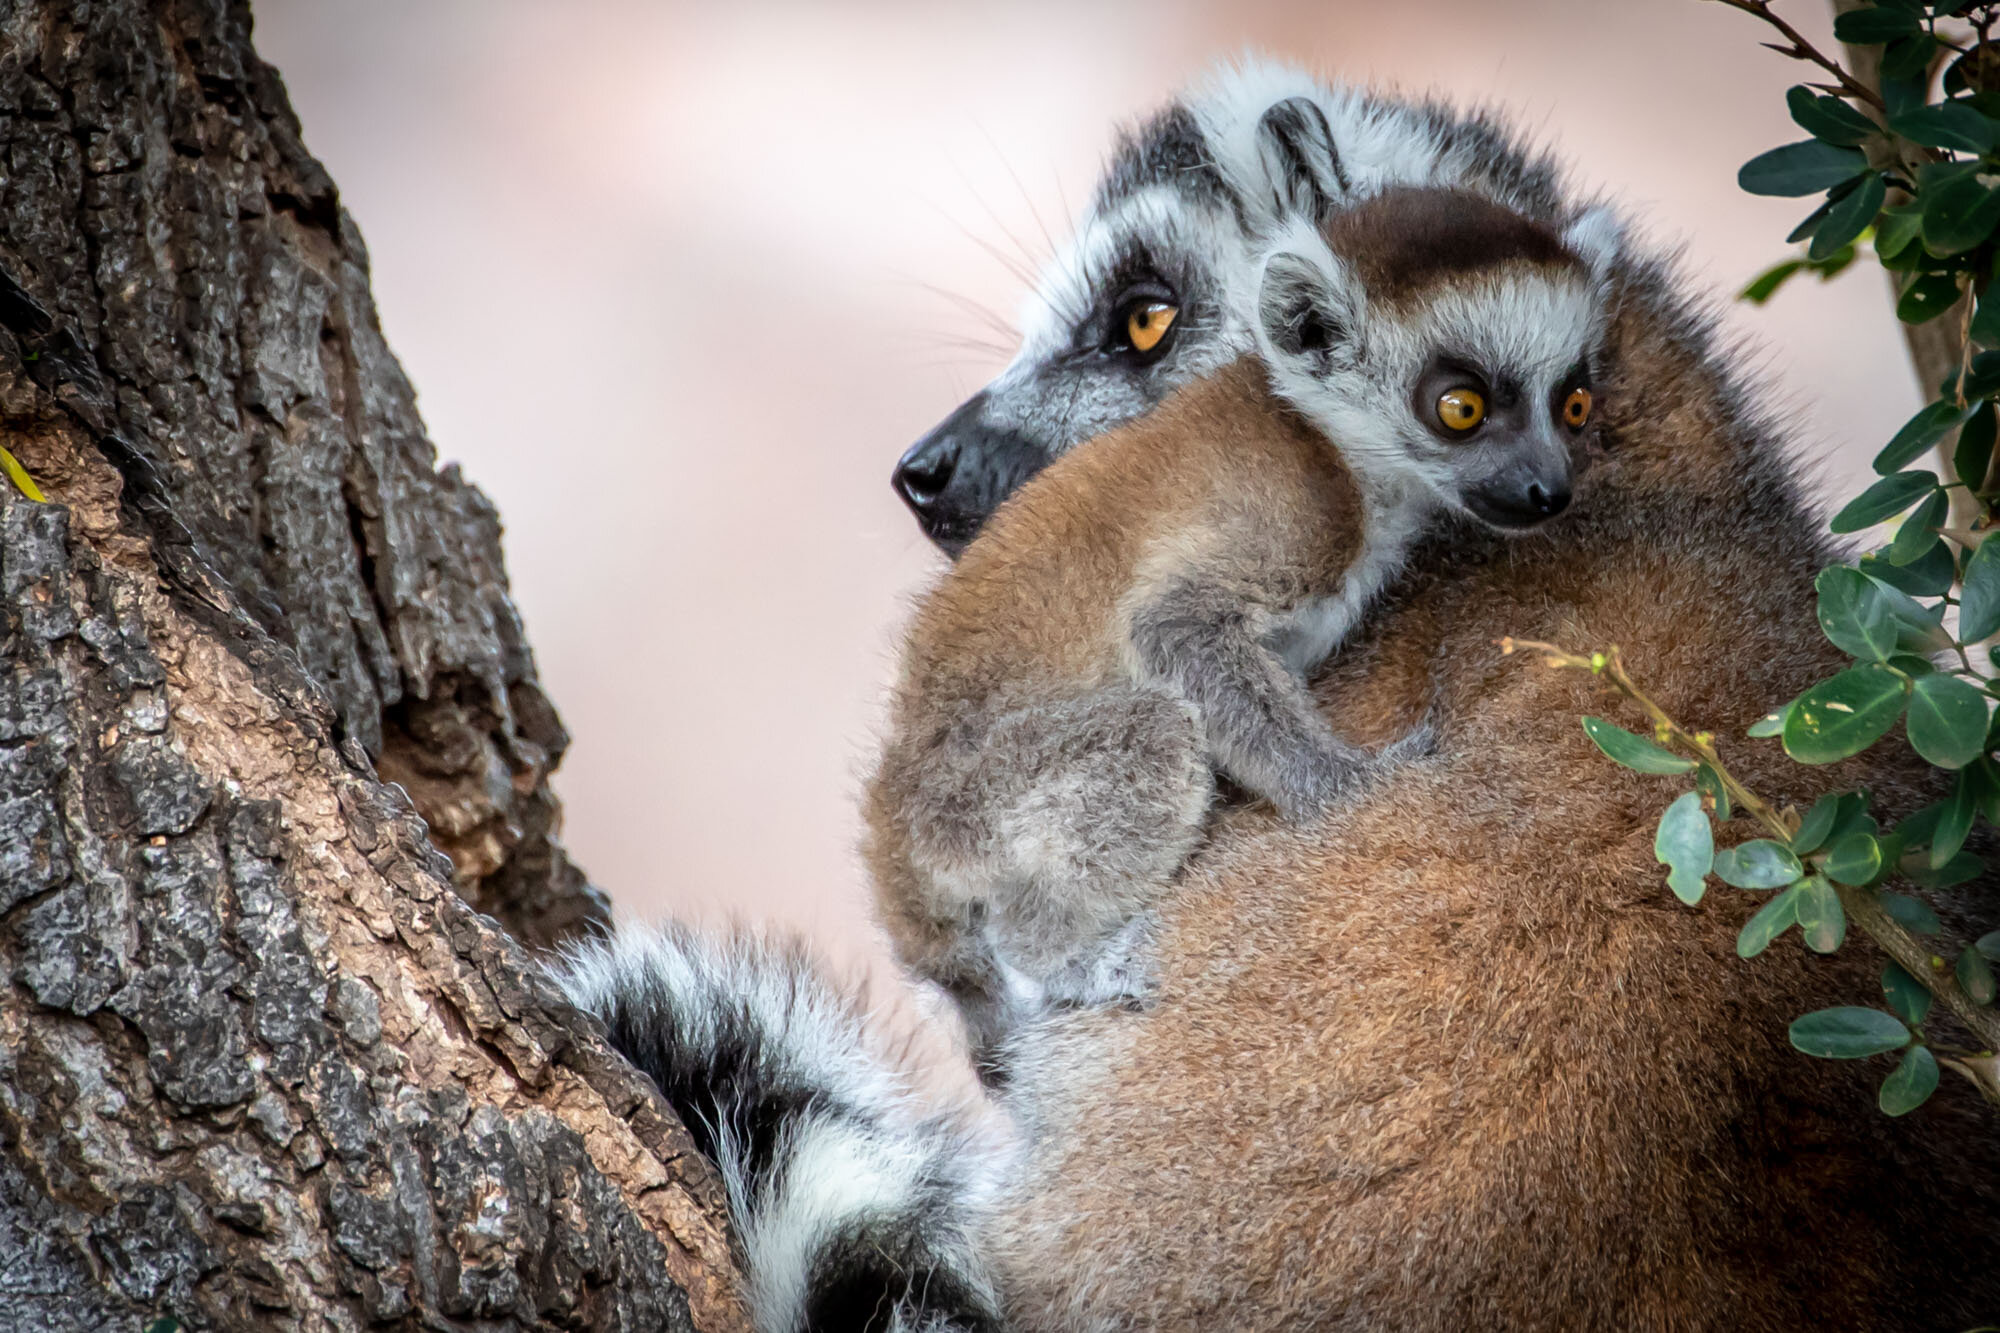 Lemur_and_mom_at_Honolulu_Zoo_20190628_©HowardWolff-1.jpg